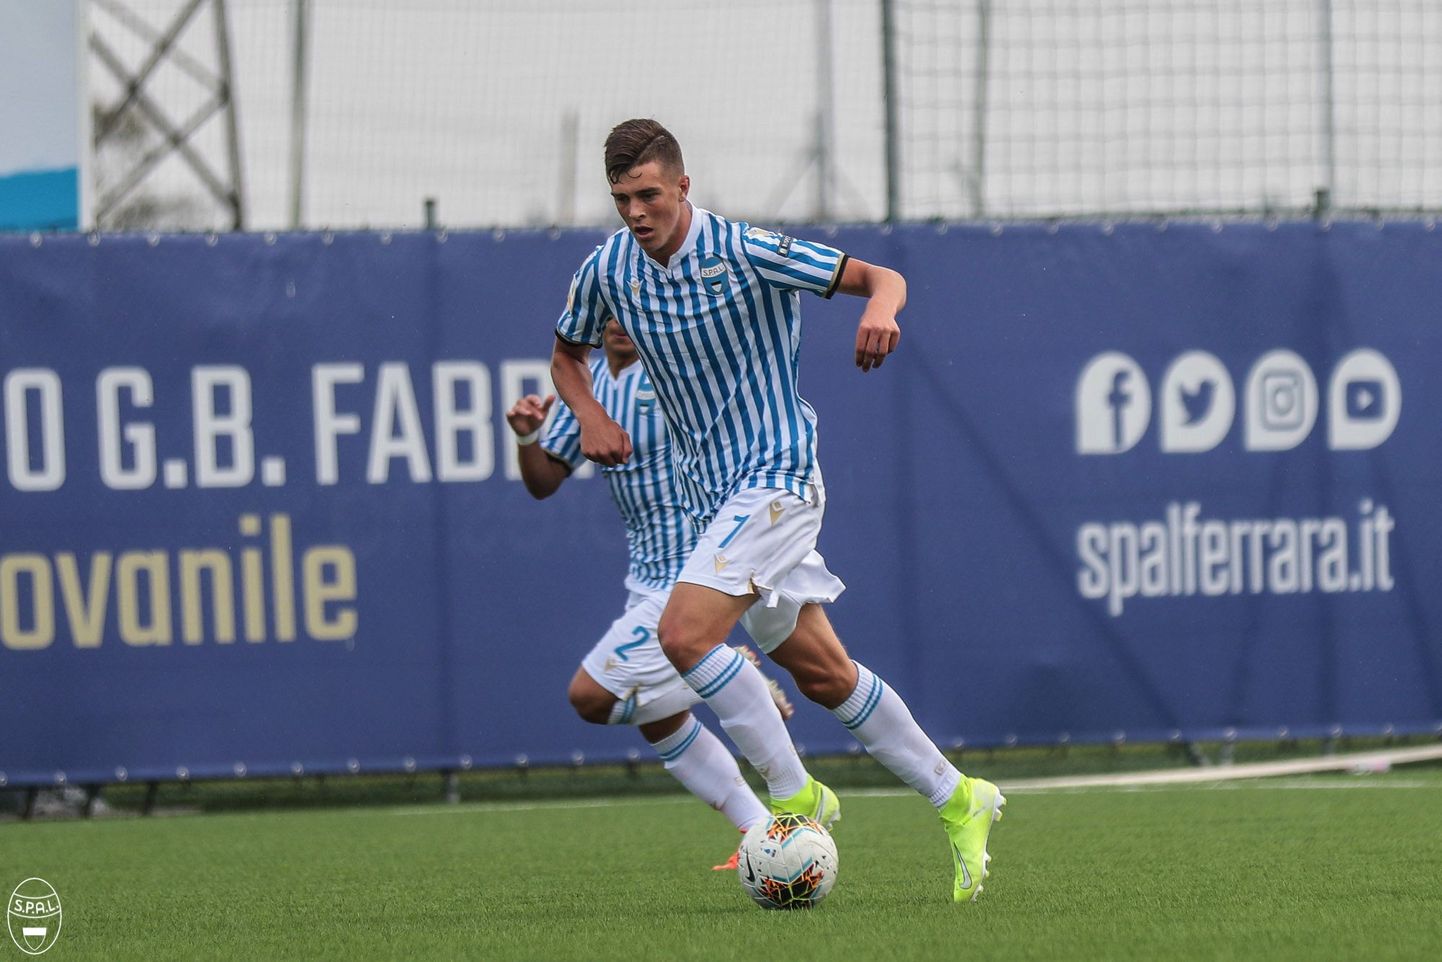 18-летний эстонский футболист Георгий Тунев дебютировал в итальянской Серии А, выйдя на поле в матче СПАЛ - "Рома".